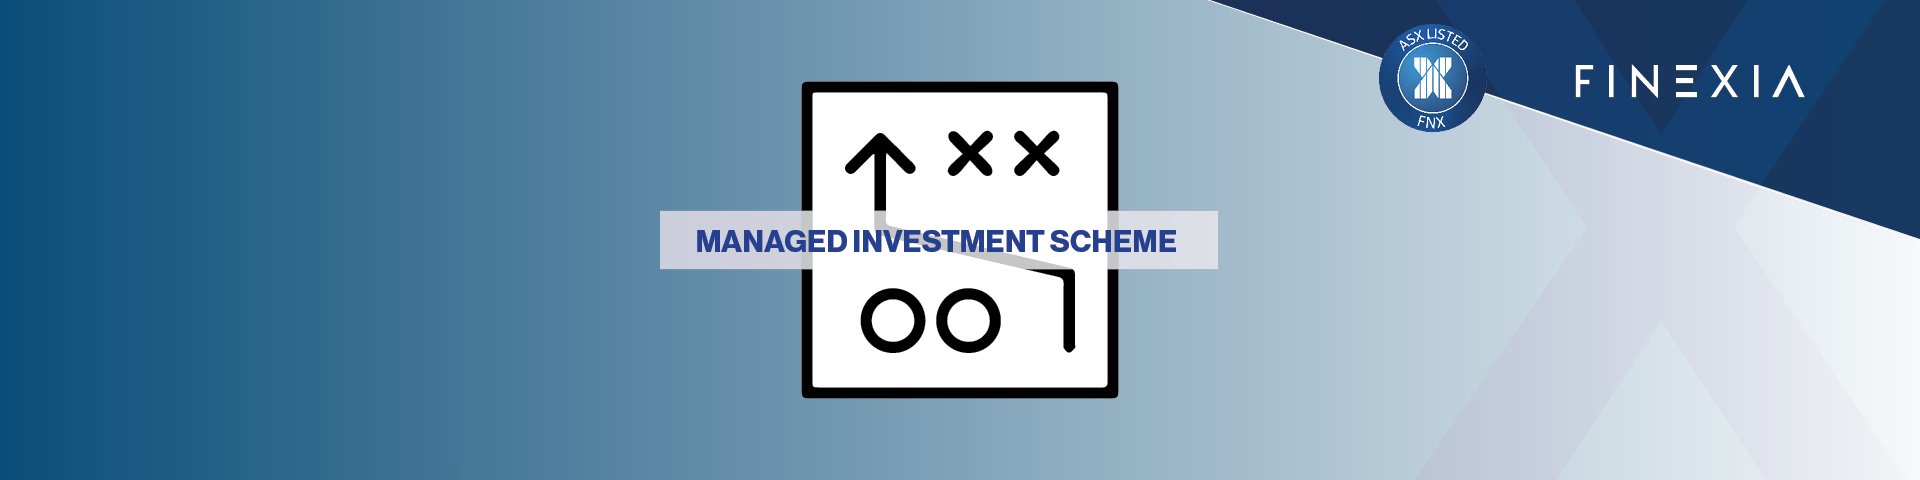 Managed Investment Scheme